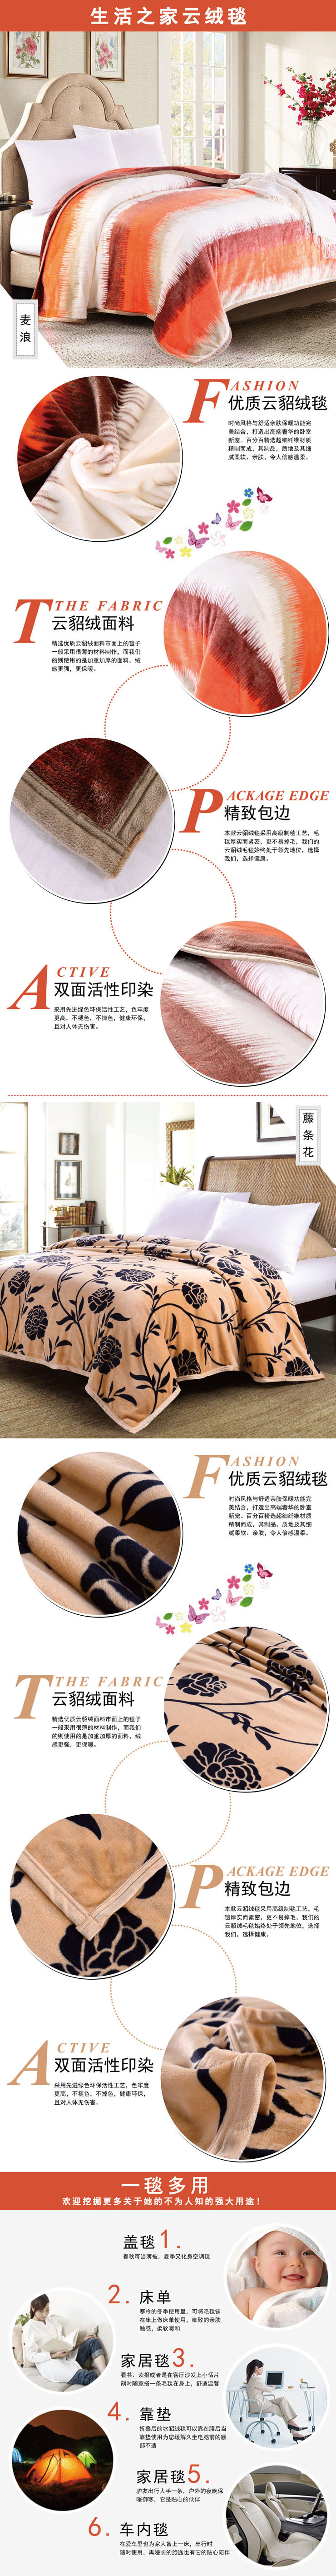 床上毛毯,毛绒毯子,江苏毛毯生产厂家,员工福利礼品